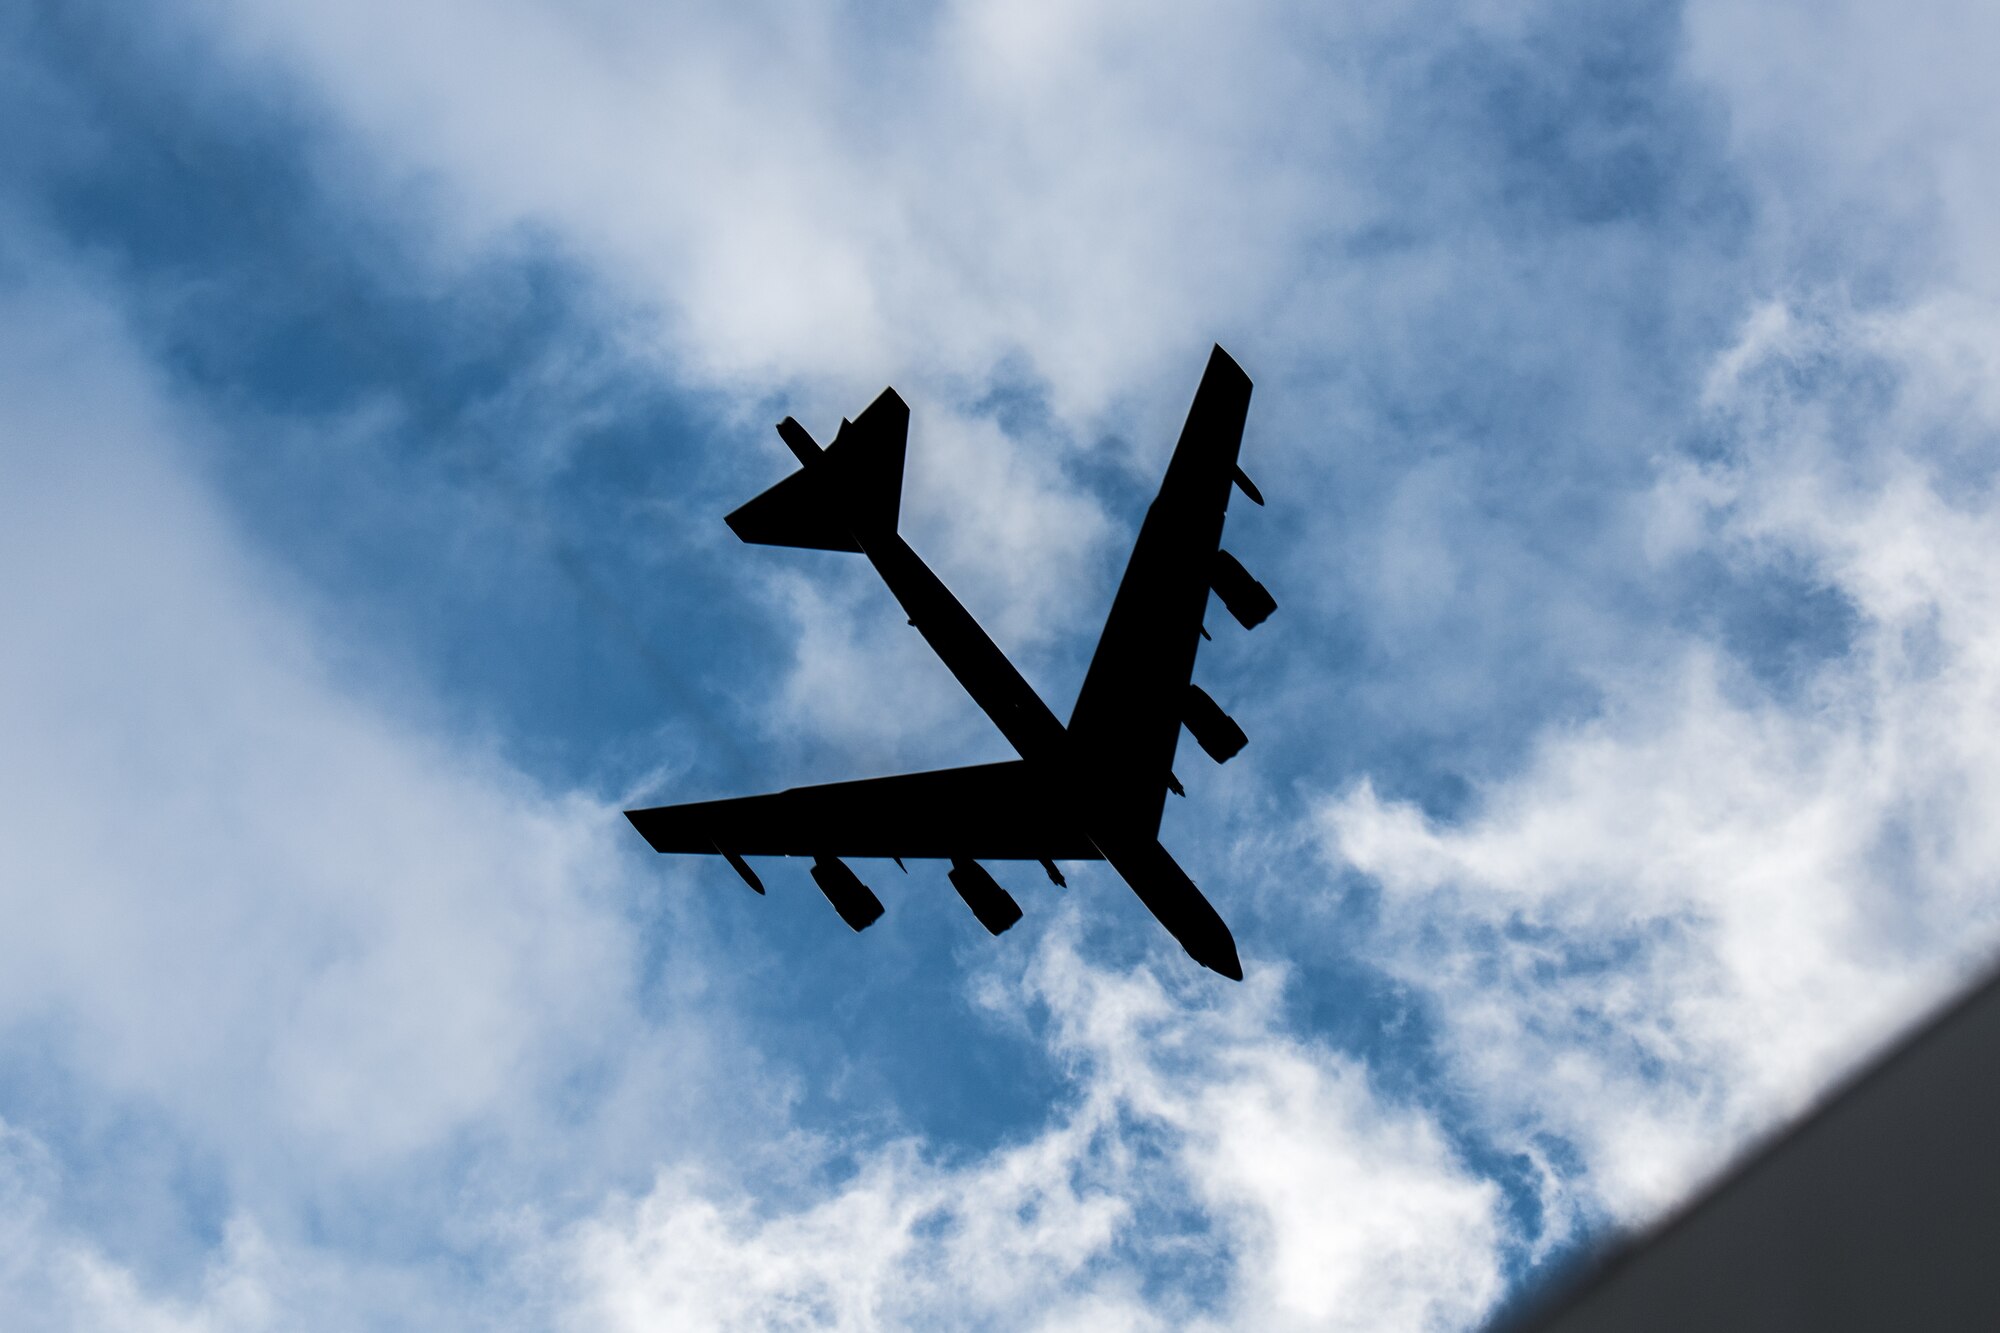 B-52 Stratofortress aircraft land at Minot AFB